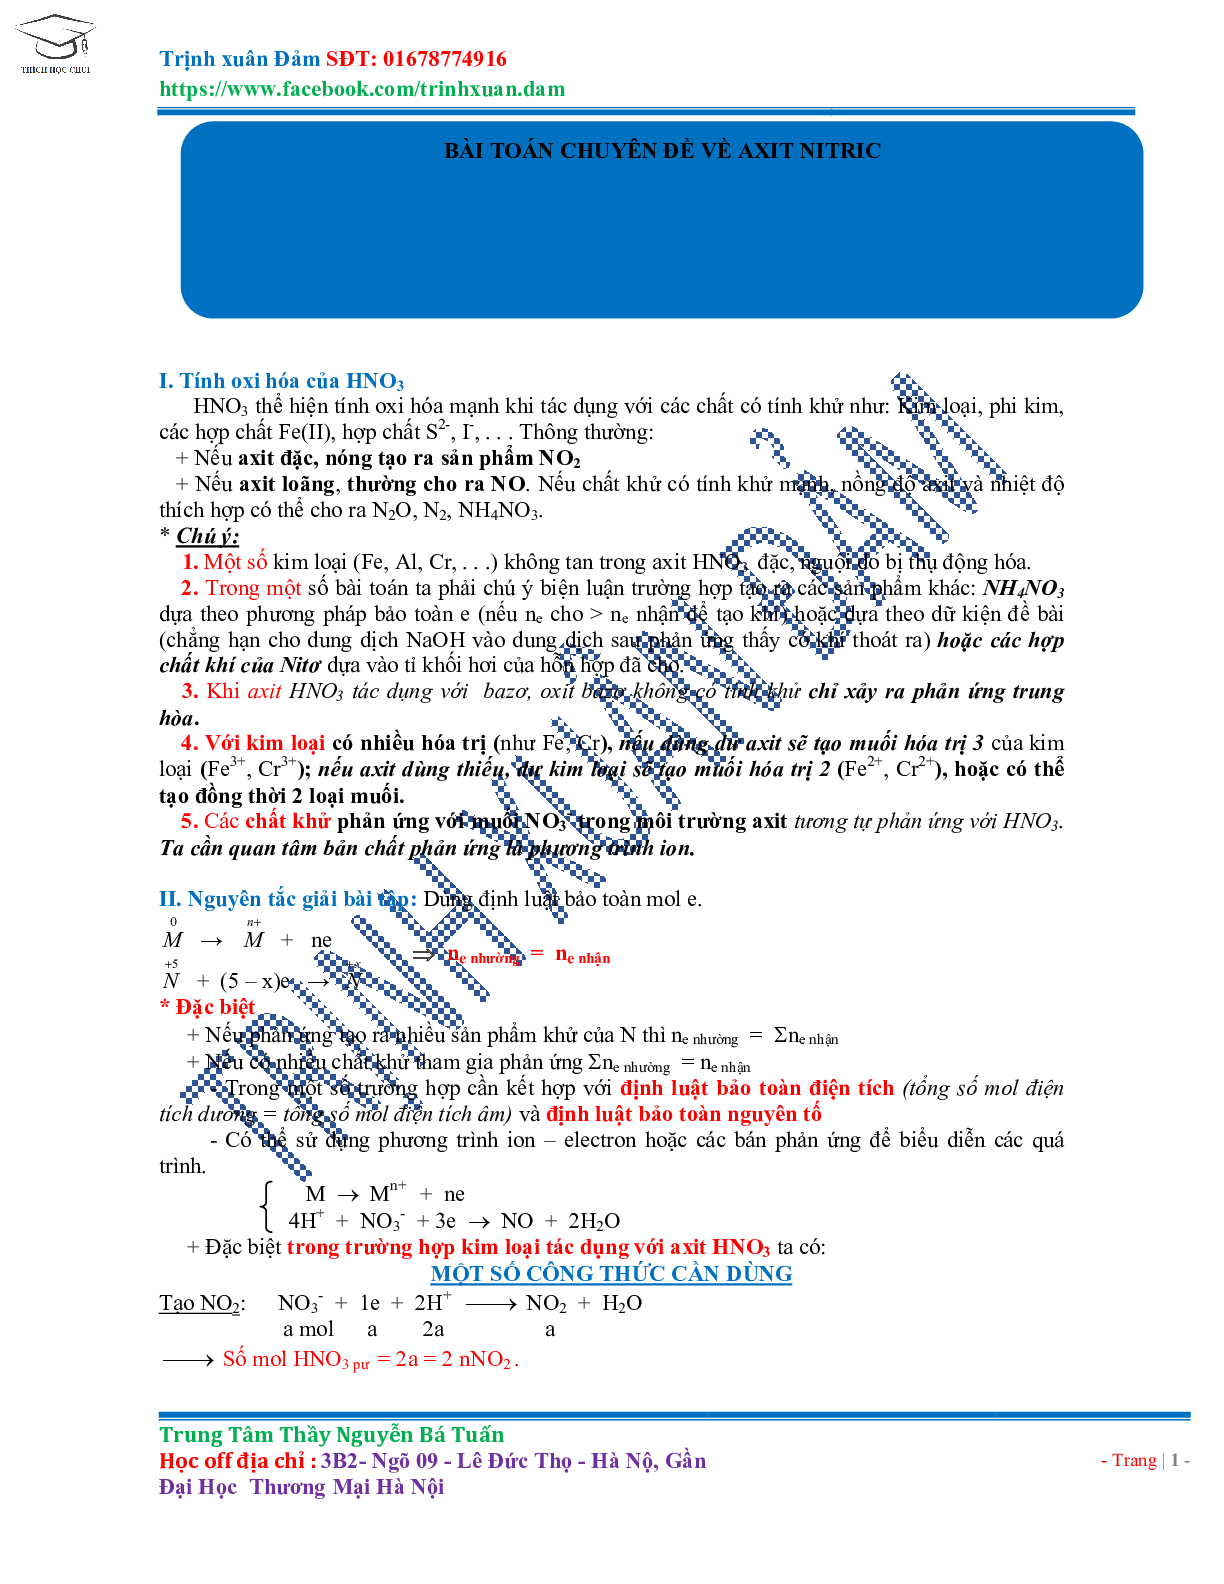 Bài toán chuyên đề HNO3 môn Hóa học lớp 11 (trang 1)